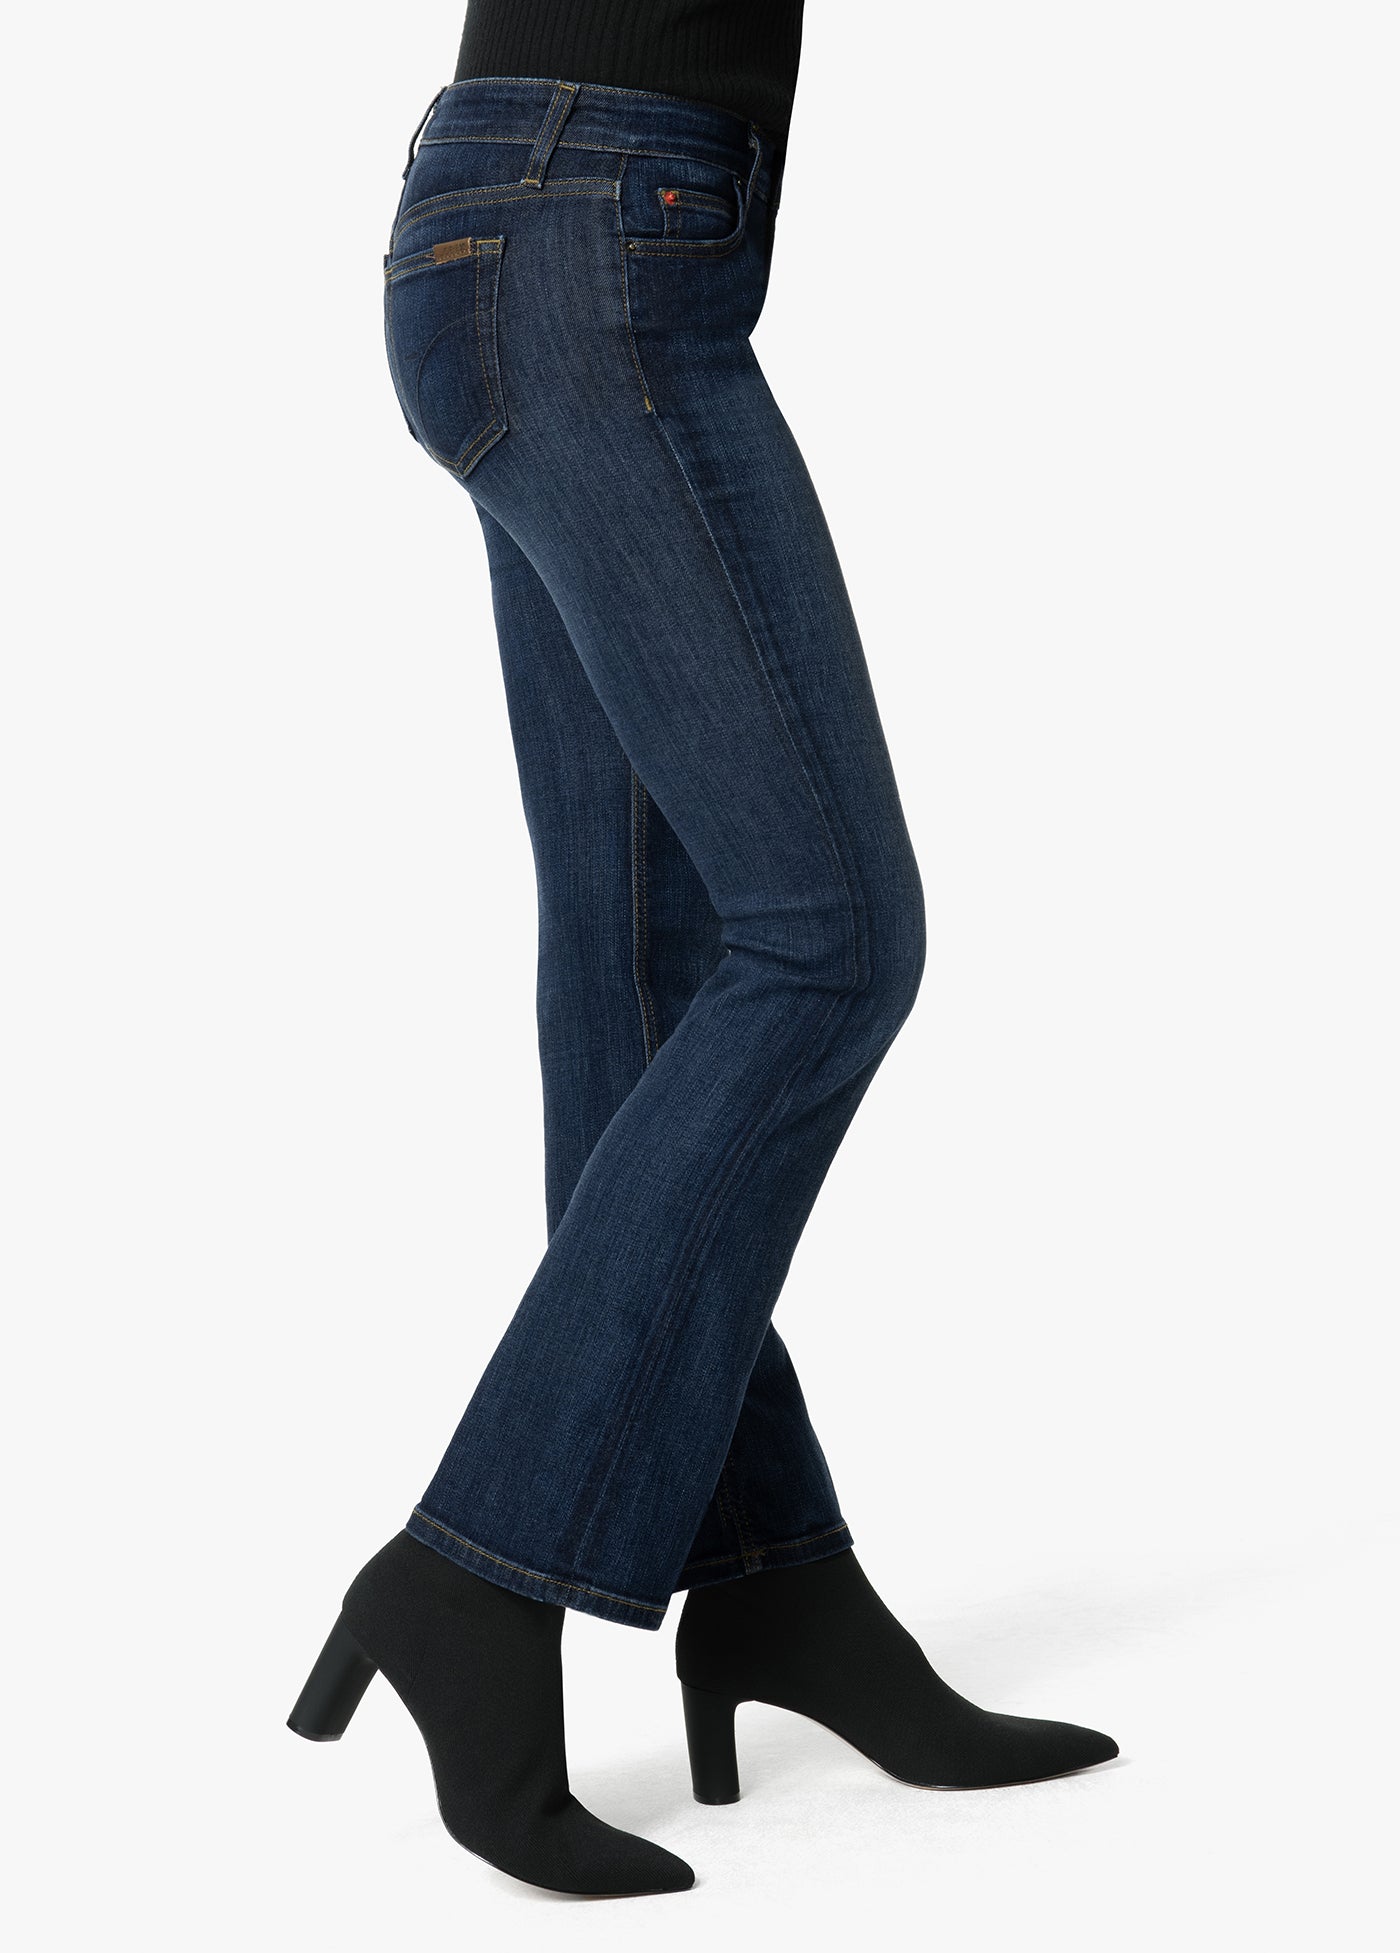 mens jeans 40 waist 29 leg